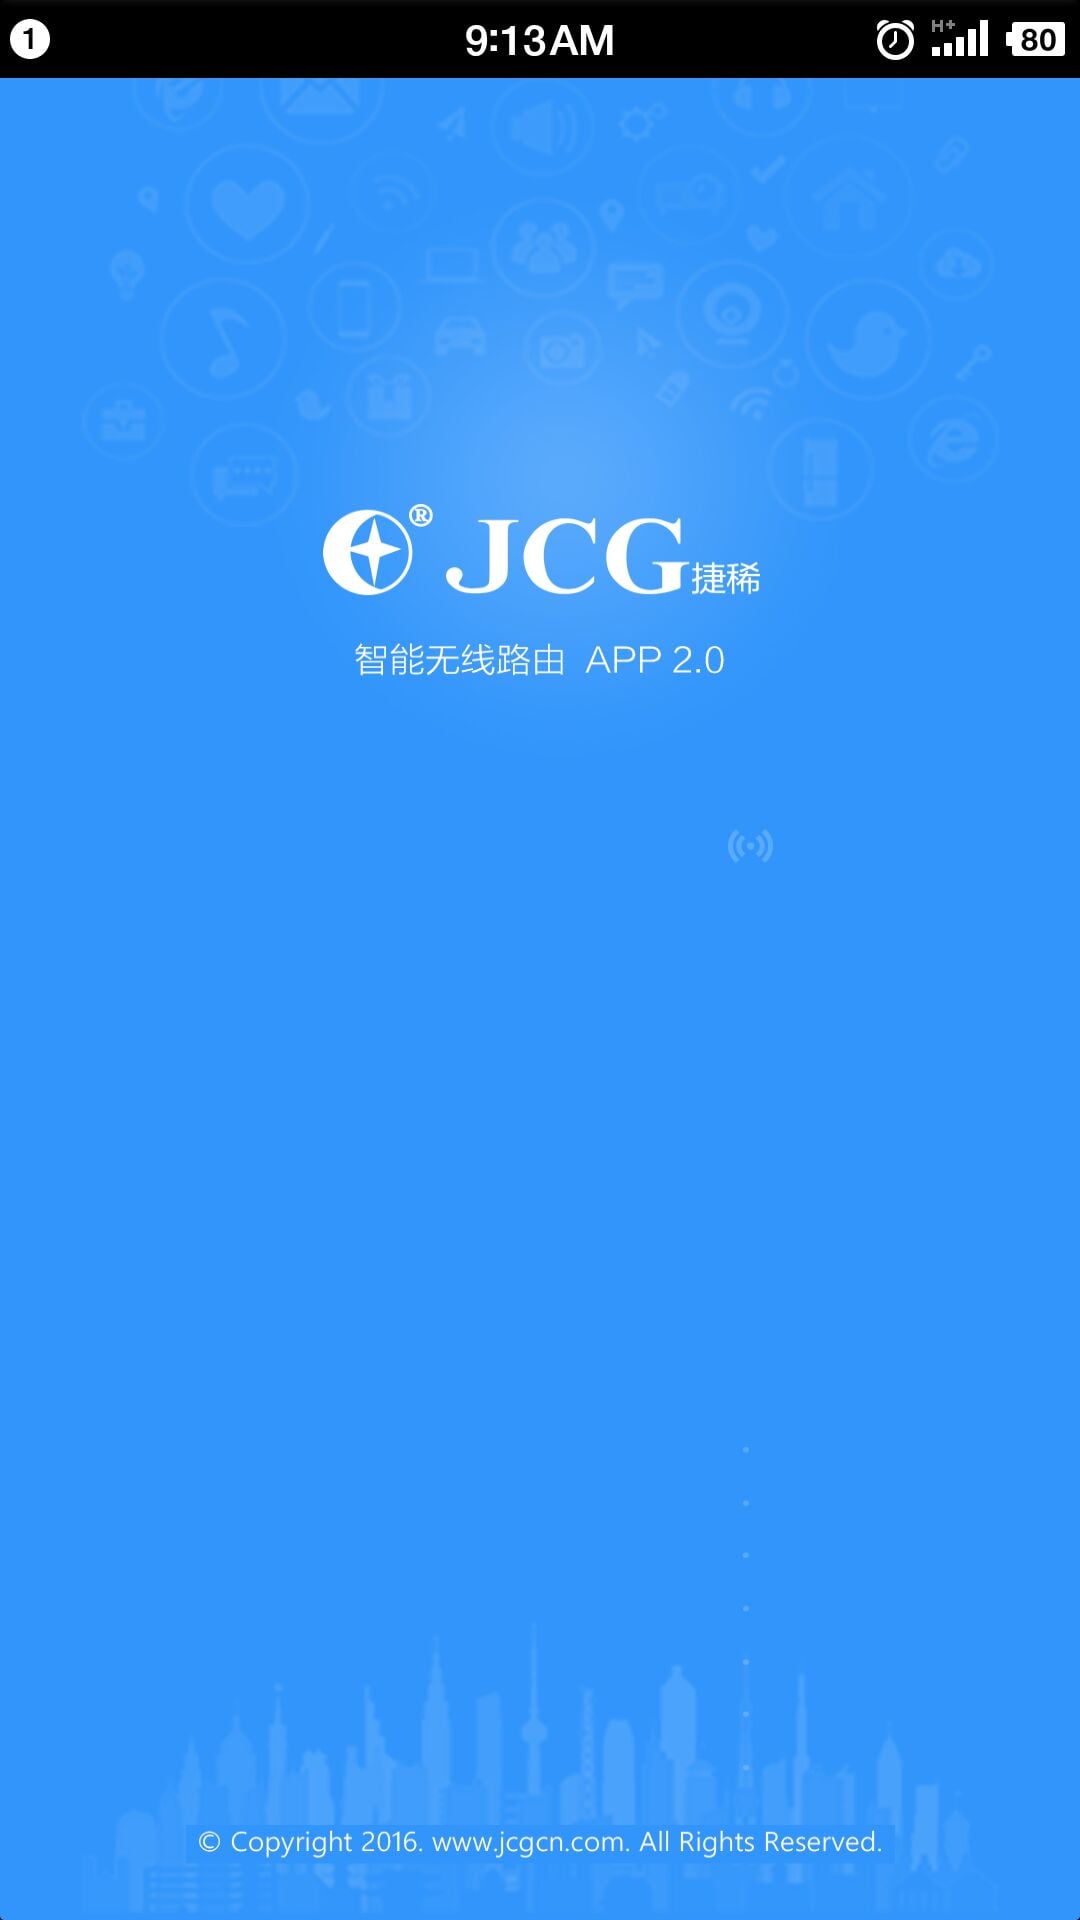 JCG智能路由器